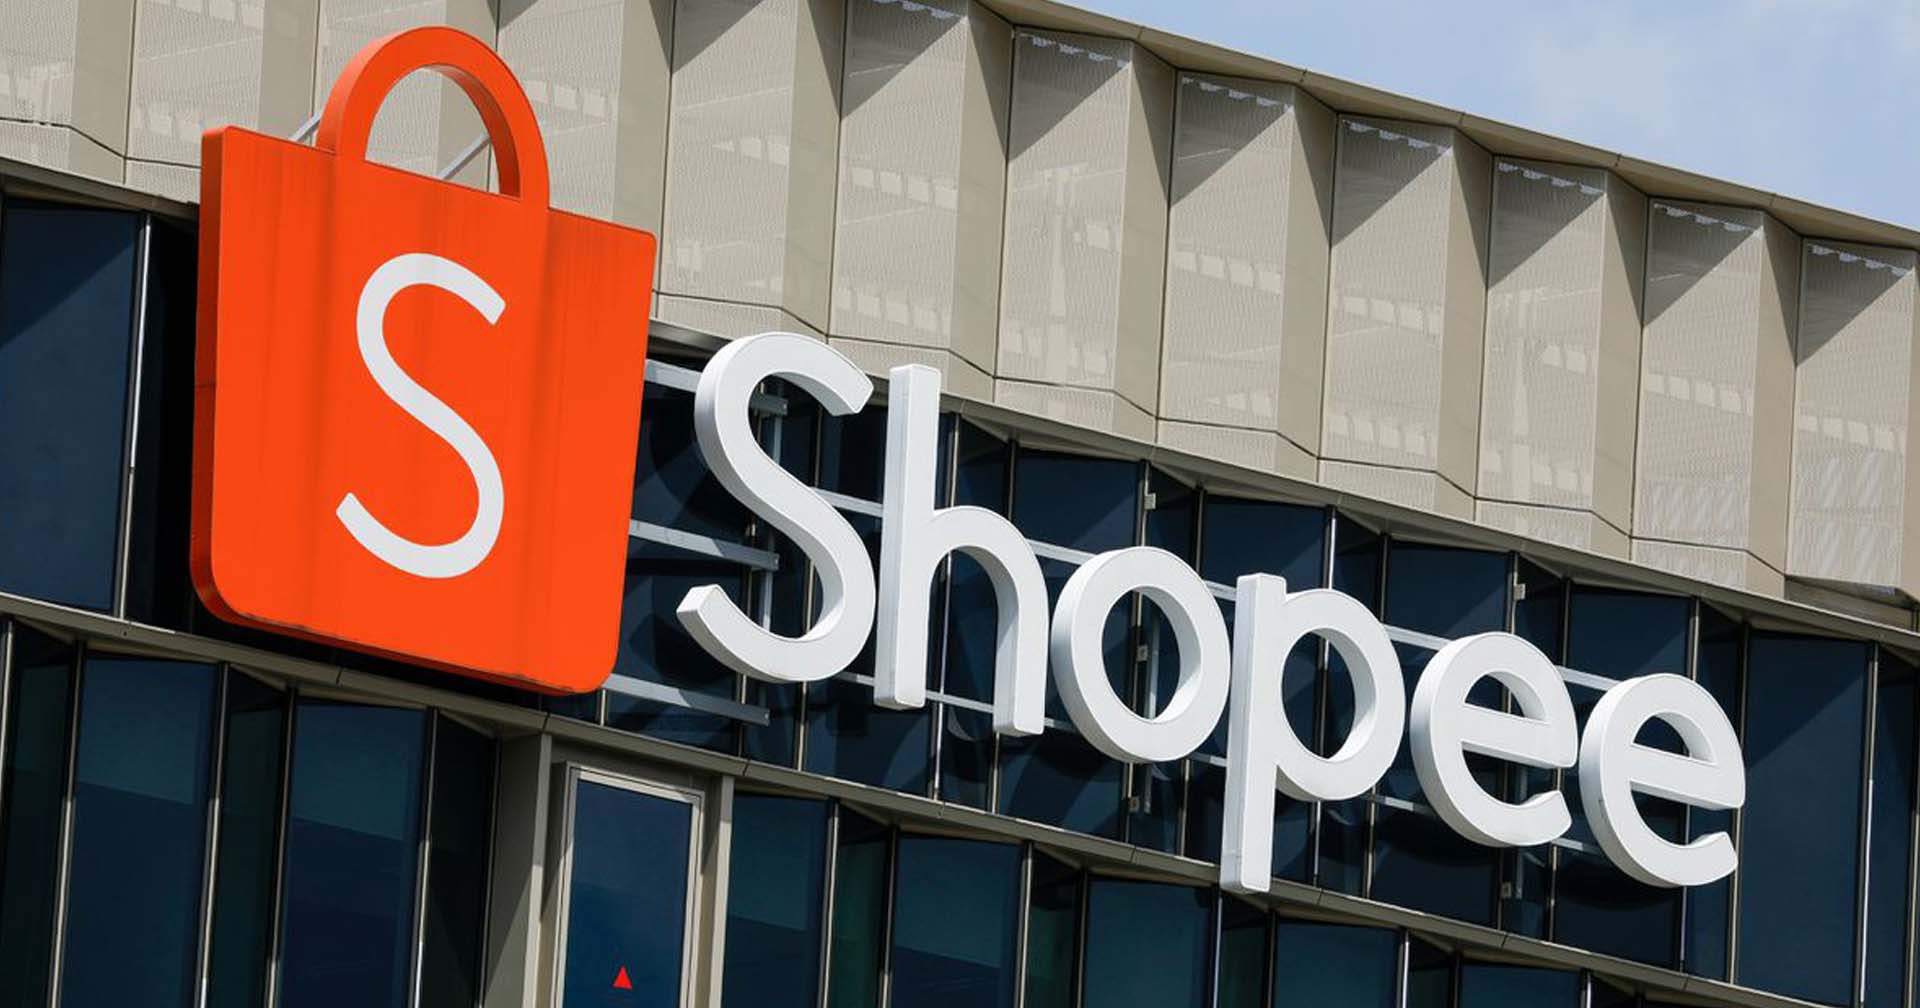 Shopee ขึ้นค่าธรรมเนียมการขายสำหรับผู้ขายแบบ Non-Mall (อีกแล้ว) เริ่ม 10 ต.ค. นี้